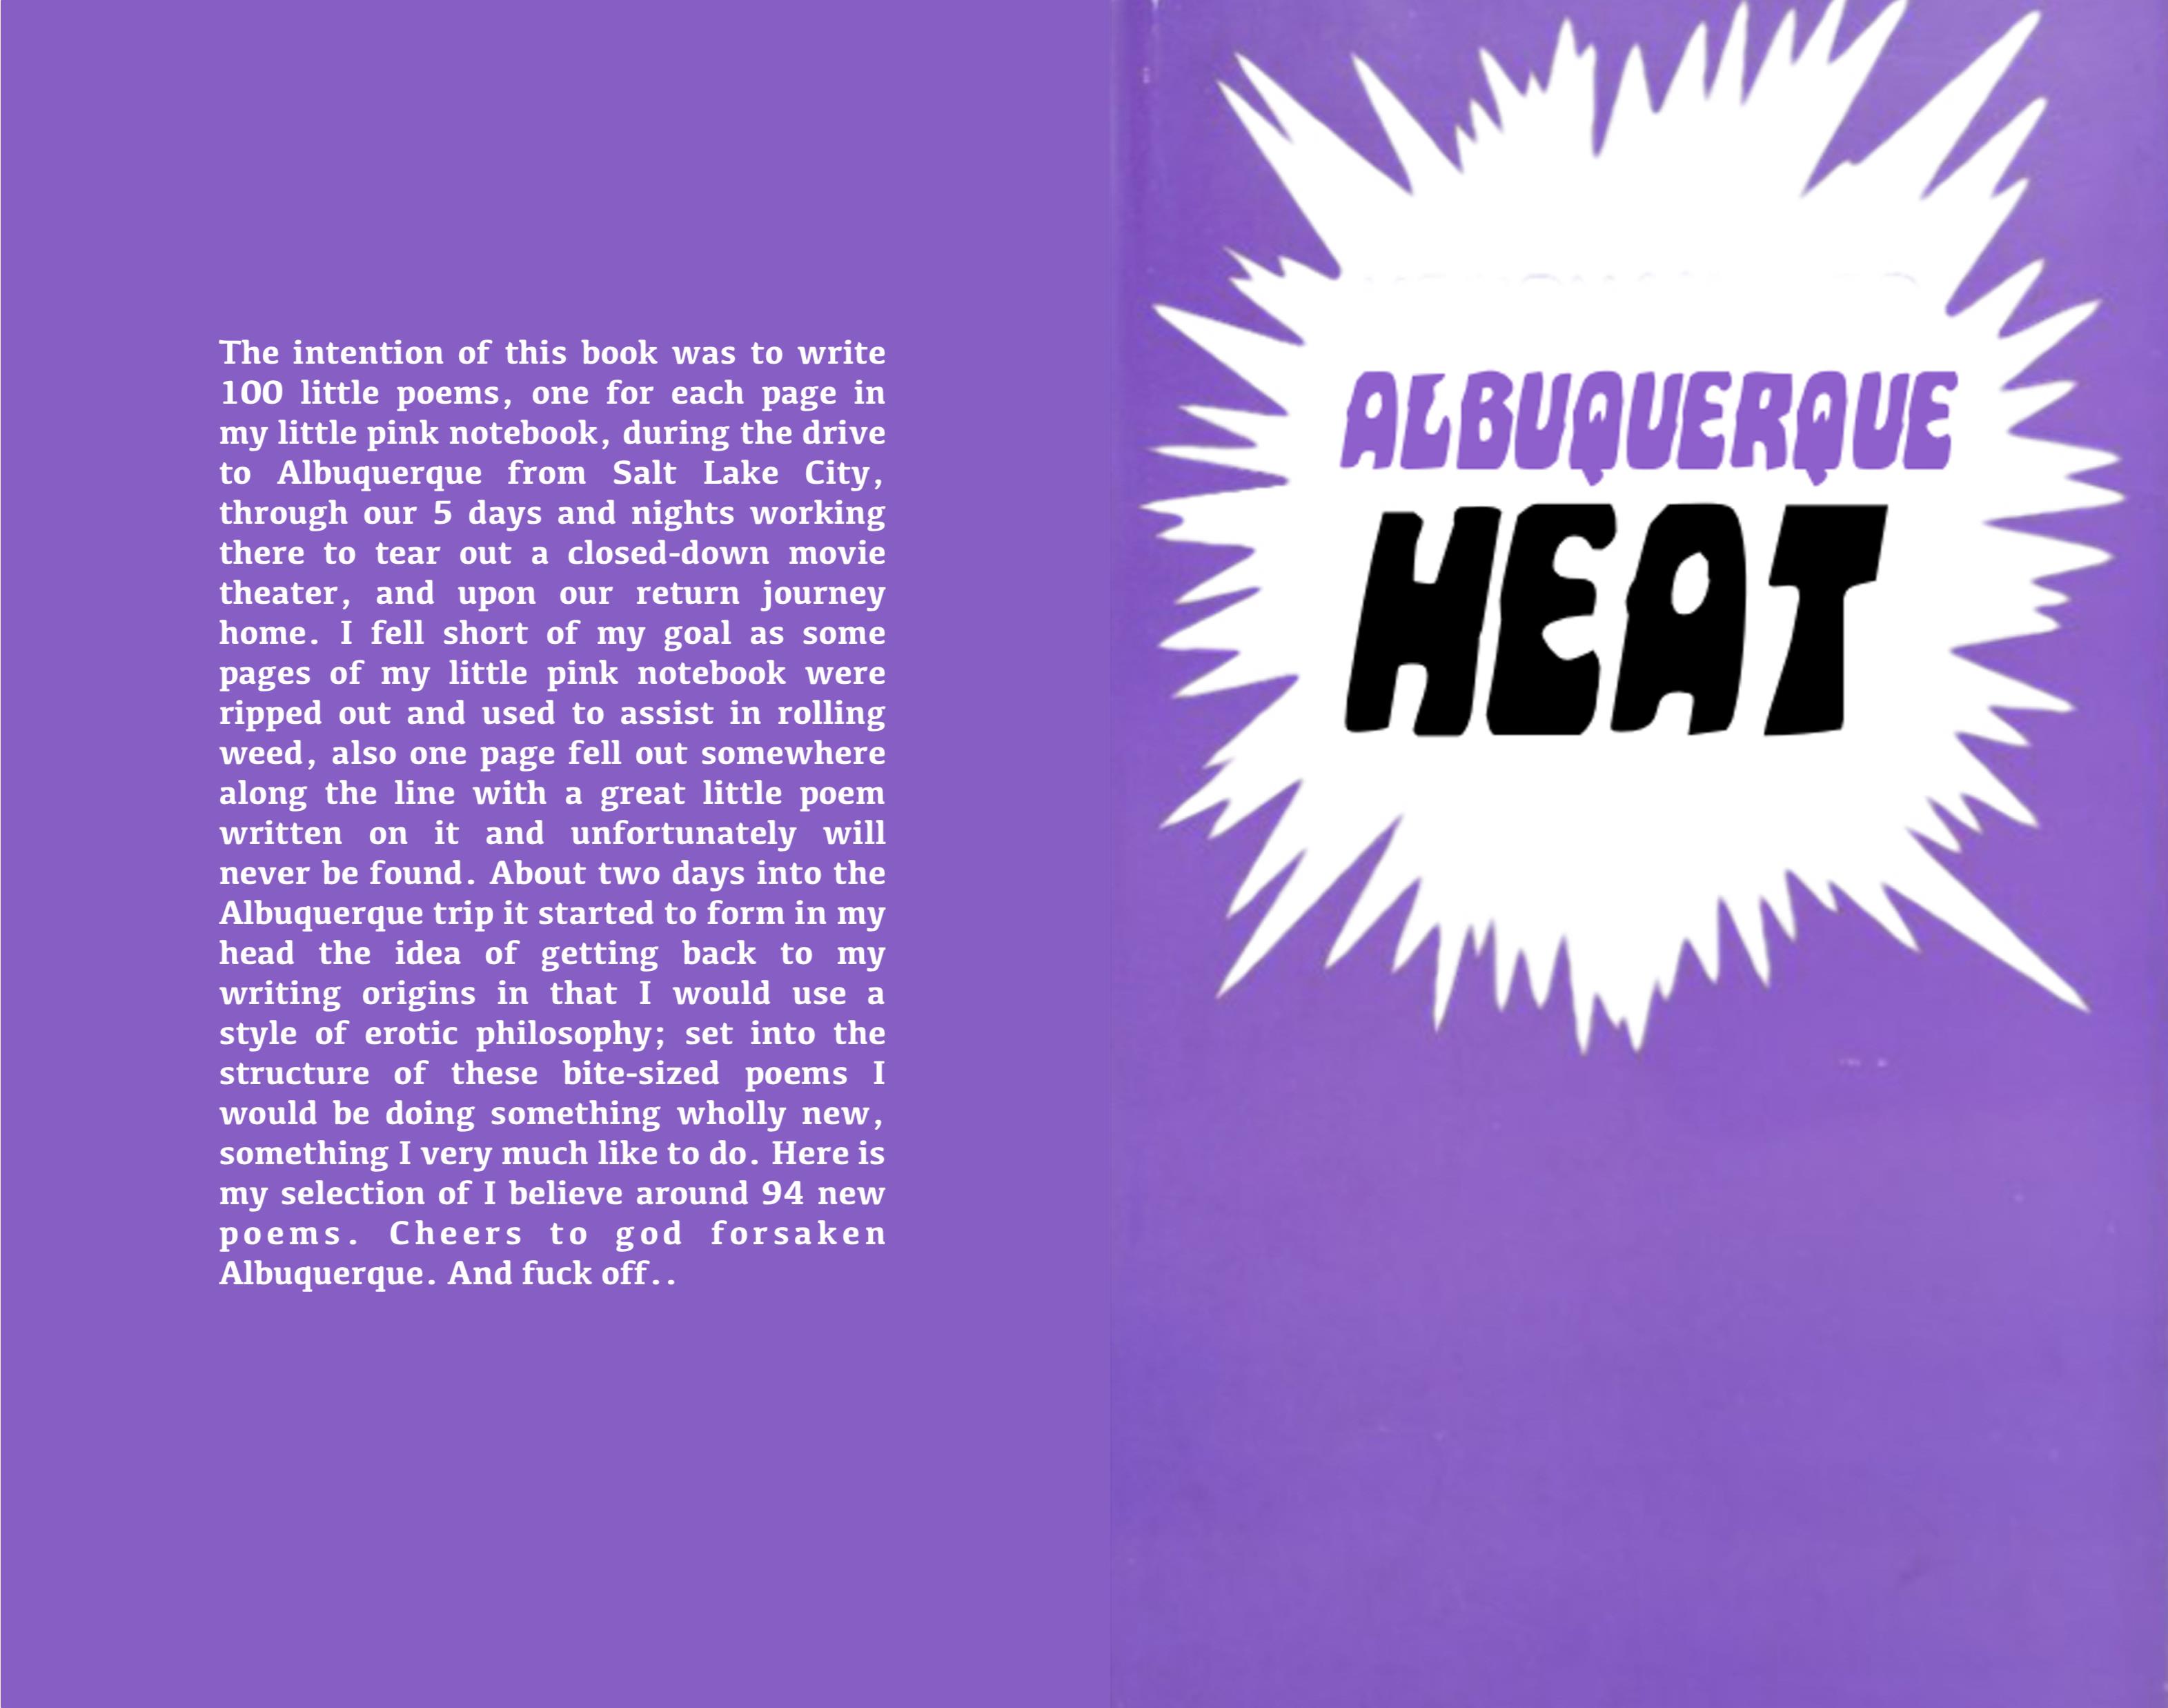 Albuquerque Heat cover image